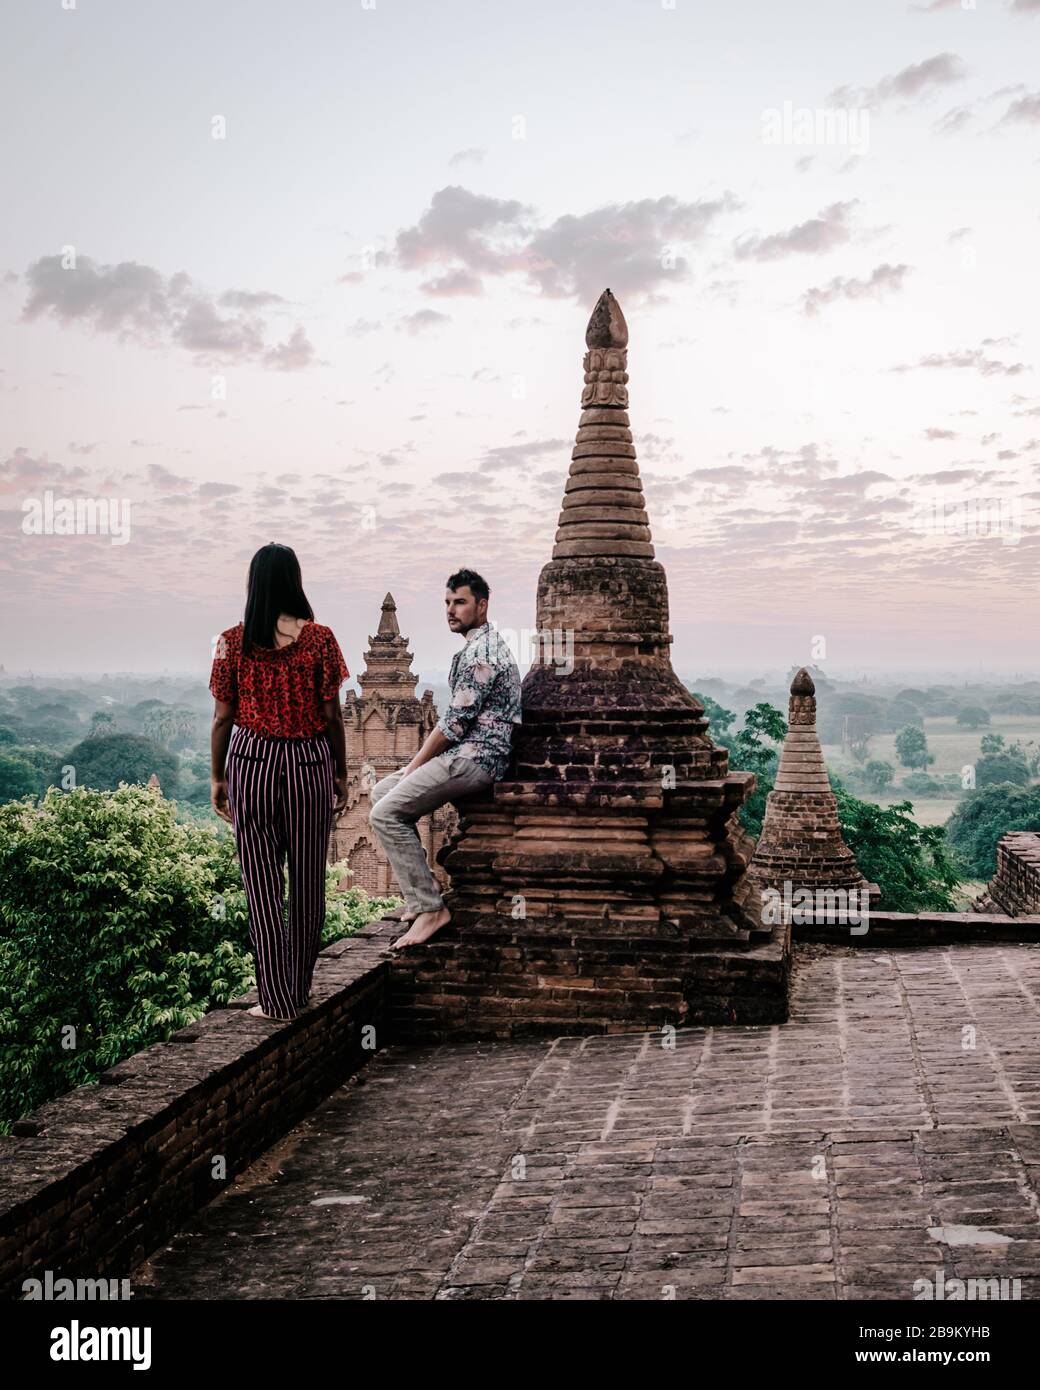 Myanmar, pareja amanecer Bagan, hombres mujer puesta de sol Bagan.casco antiguo de Bagan Myanmar, Pagodas y Templos de Burma Pagodas Asia antiguas ruinas Foto de stock